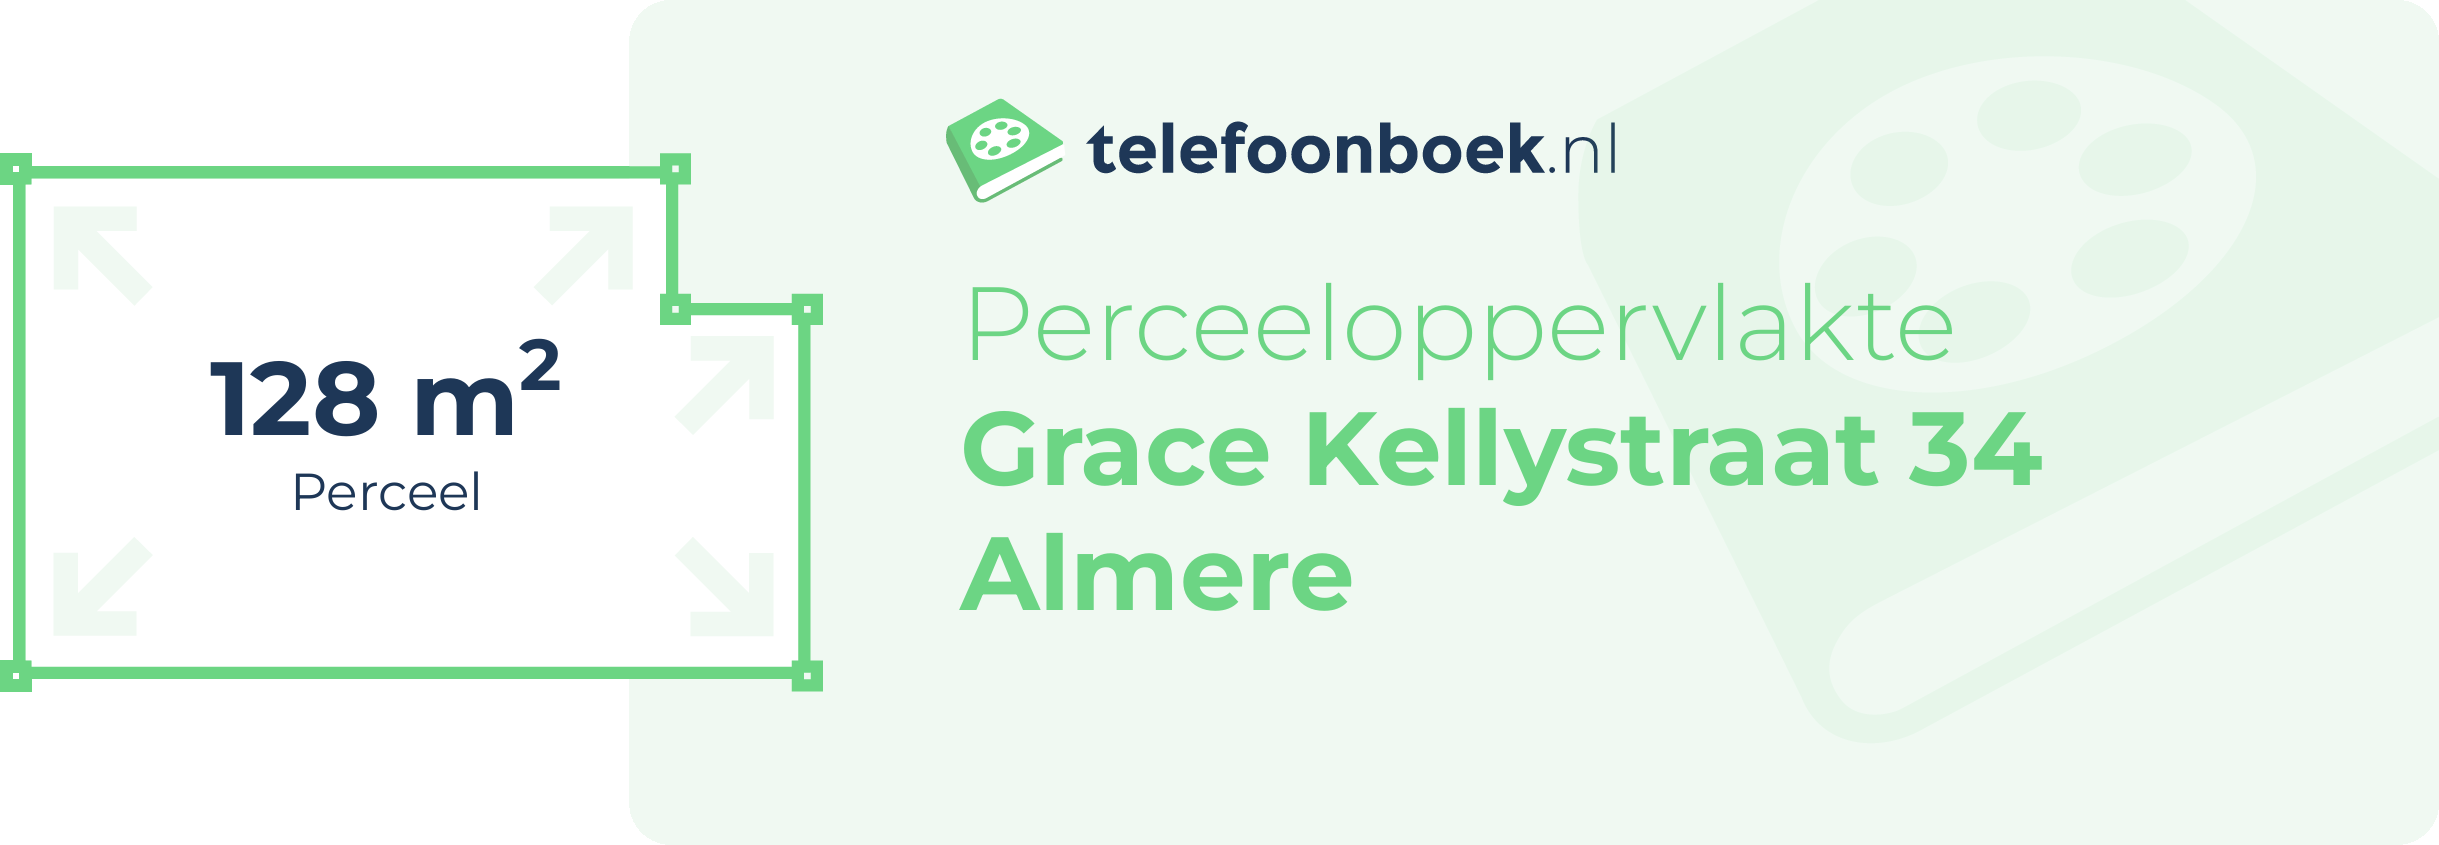 Perceeloppervlakte Grace Kellystraat 34 Almere